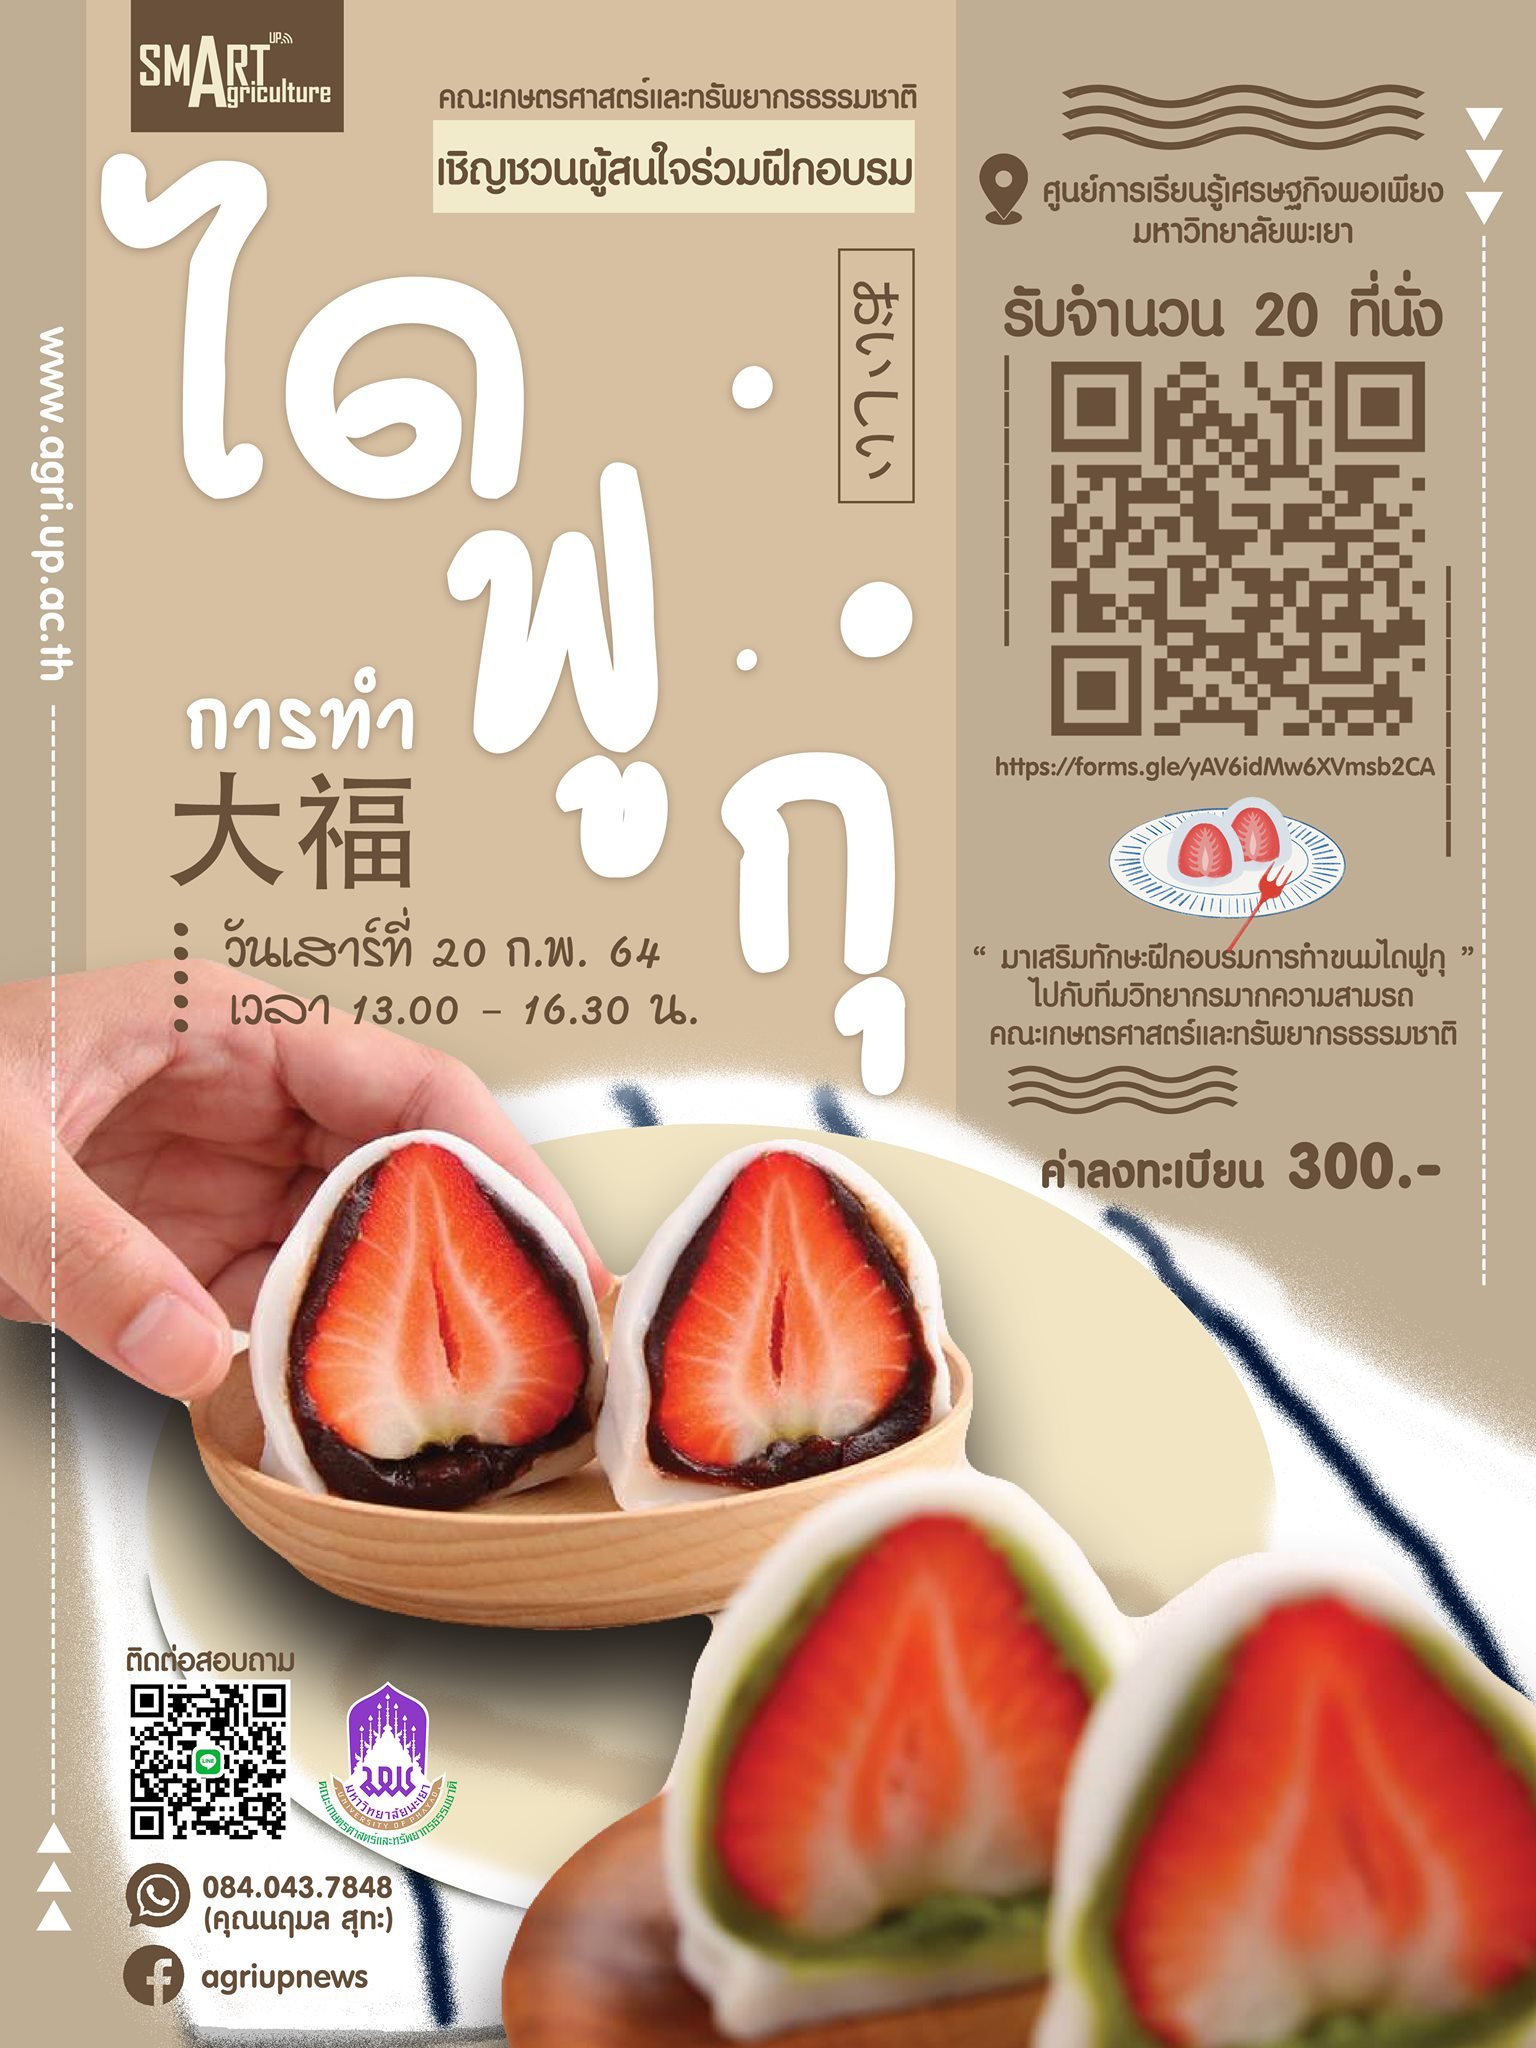 ขอเชิญชวนผู้สนใจเข้าร่วมโครงการบริการวิชาการ " การทำขนมไดฟูกุ (Daifuku) "